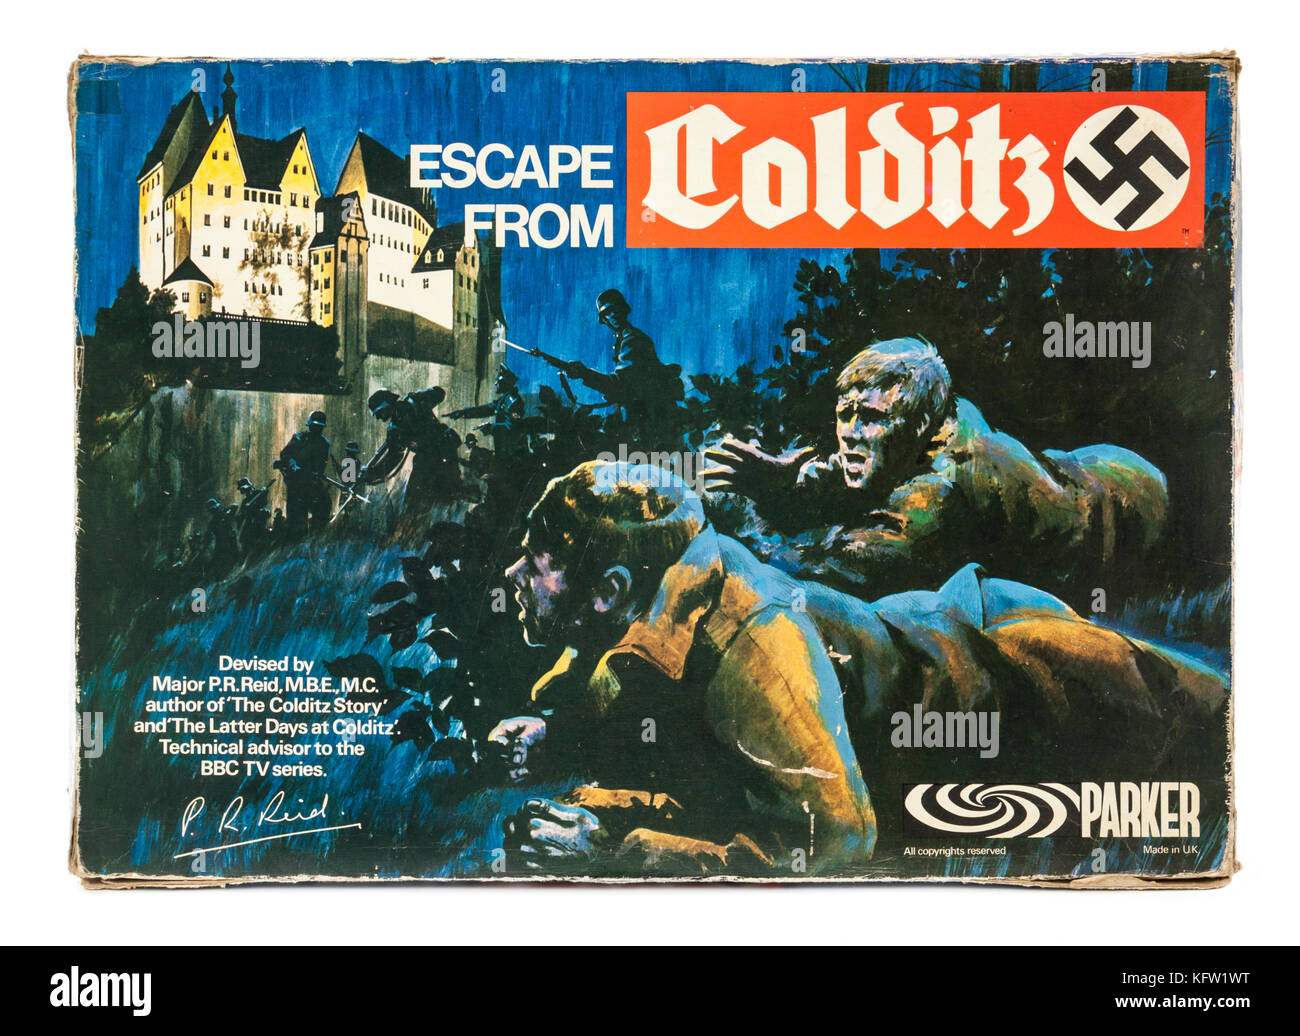 Original 1970er Version des "Escape from Colditz" Brettspiel mit einem Deutschen Hakenkreuz auf der Box. Auf späteren Editionen, das Hakenkreuz war w Ersetzt Stockfoto